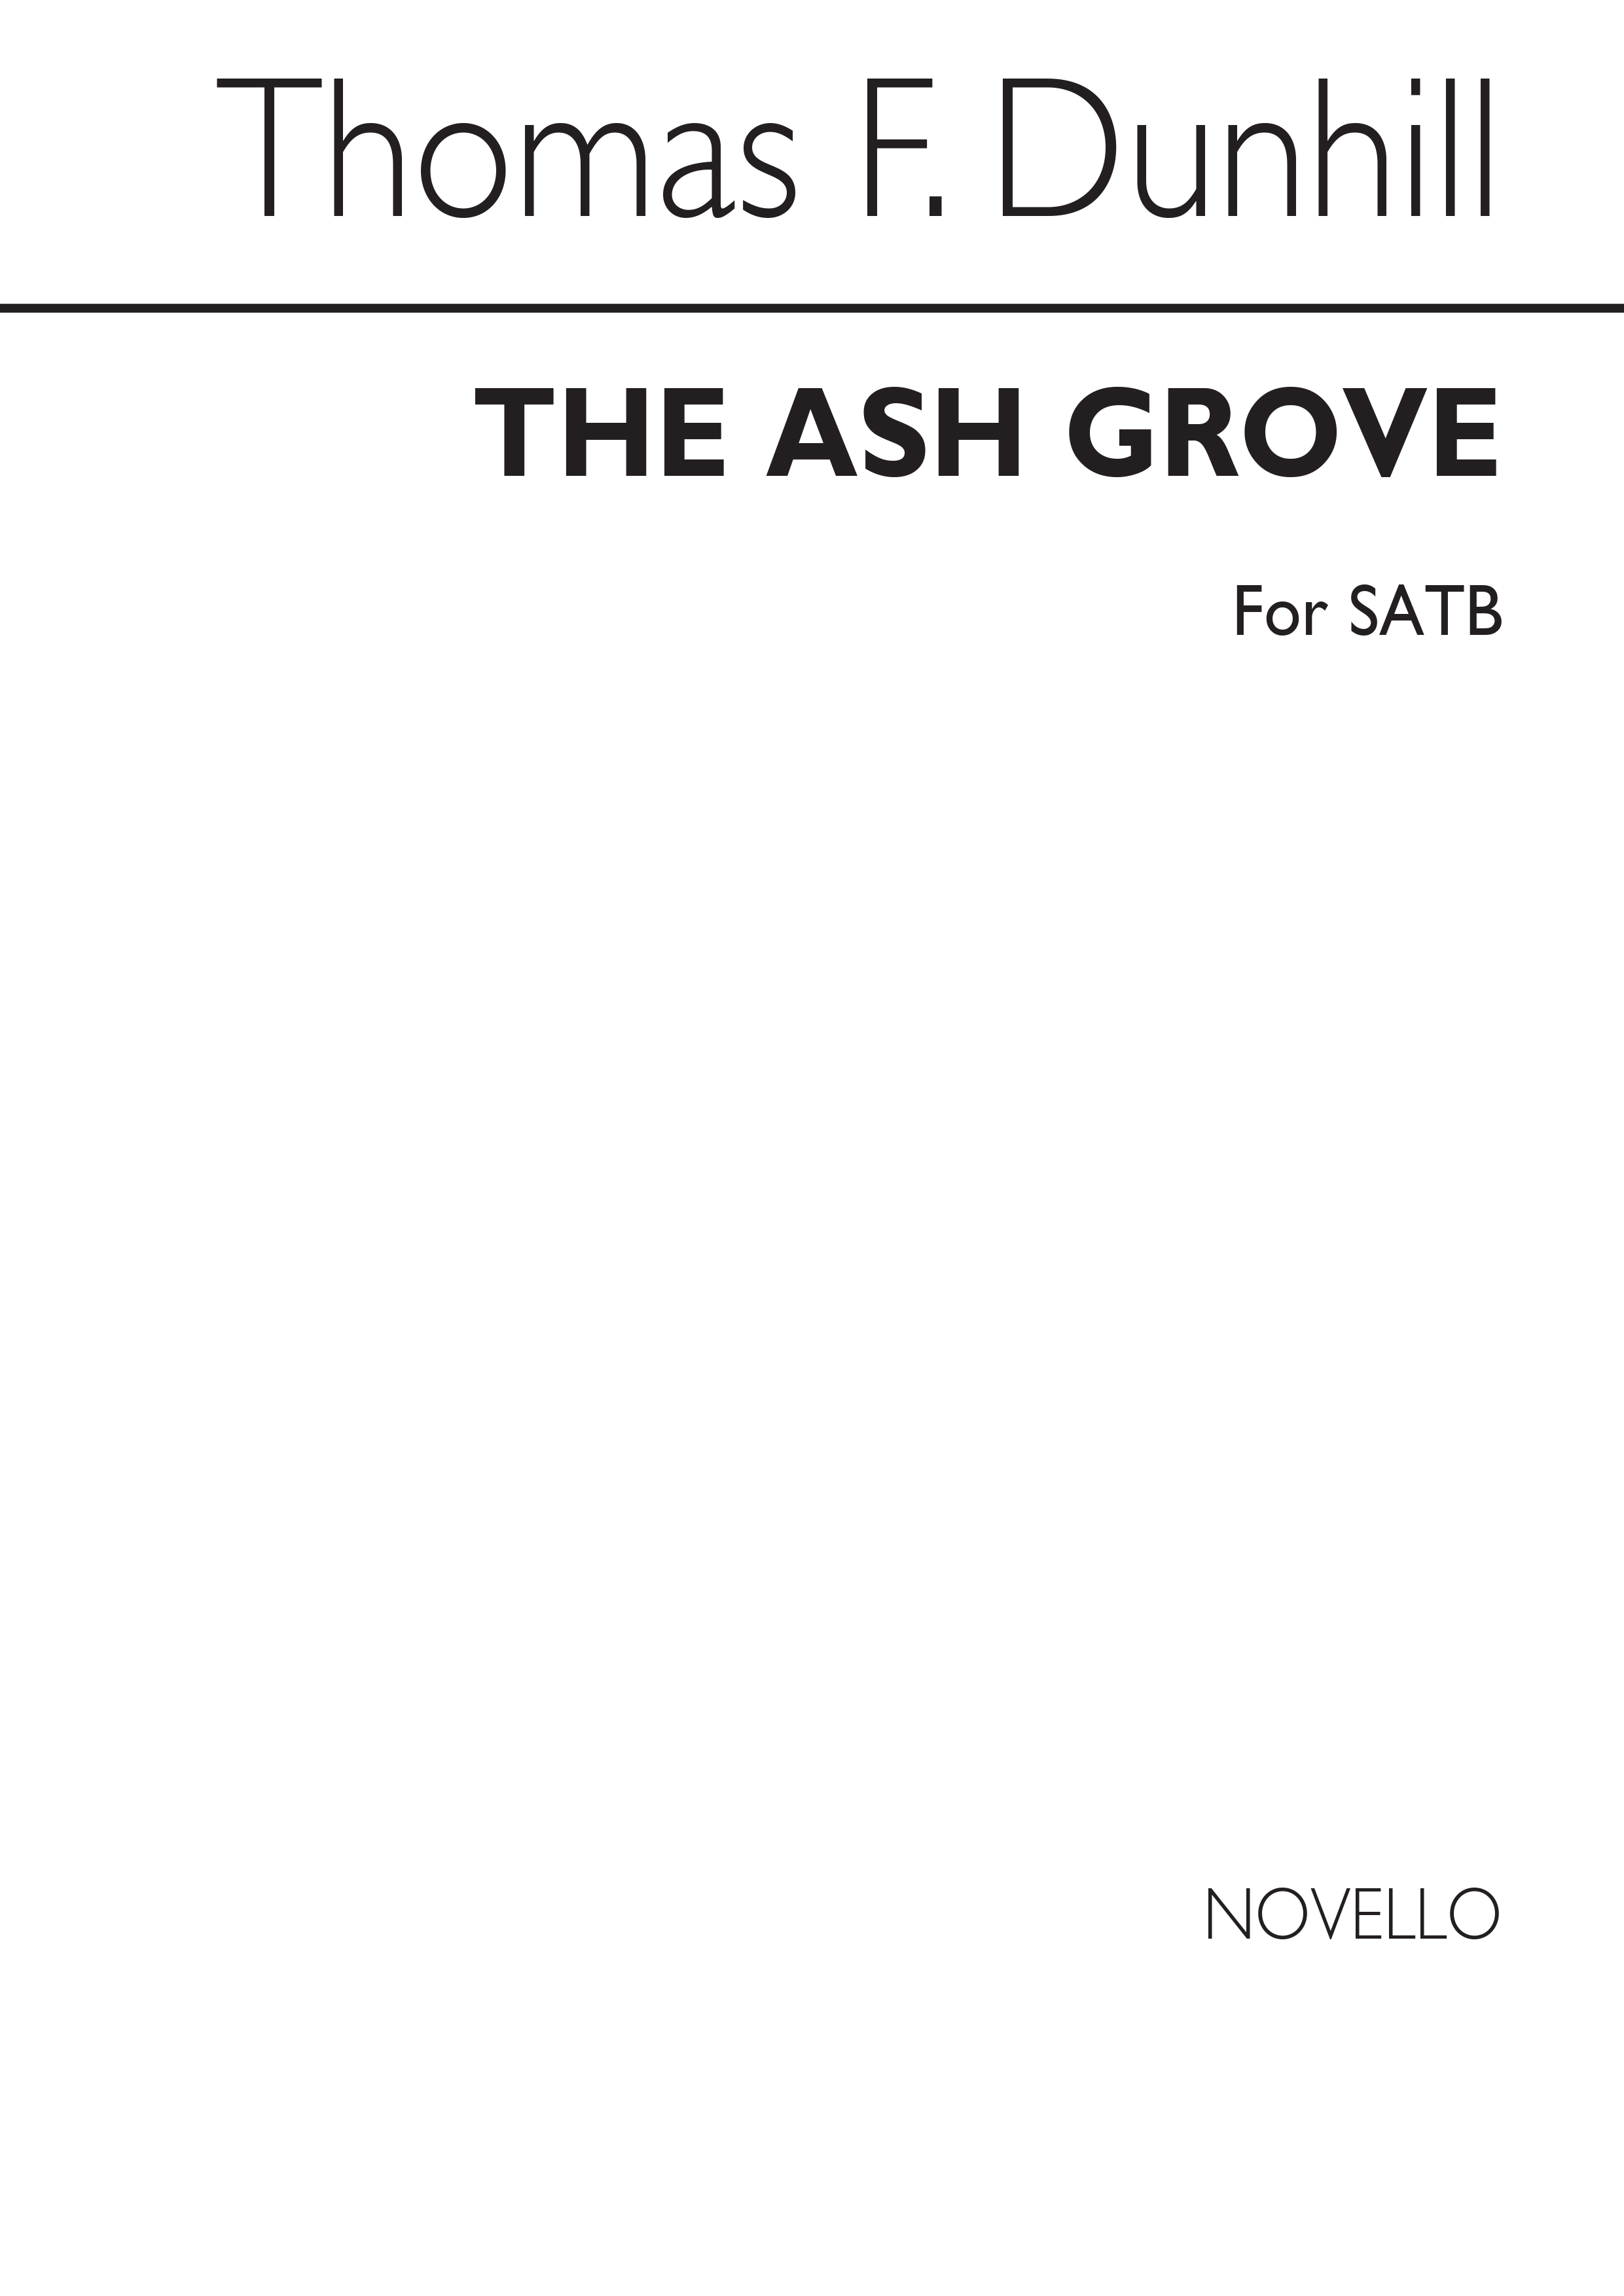 Dunhill: The Ash Grove for SATB Chorus